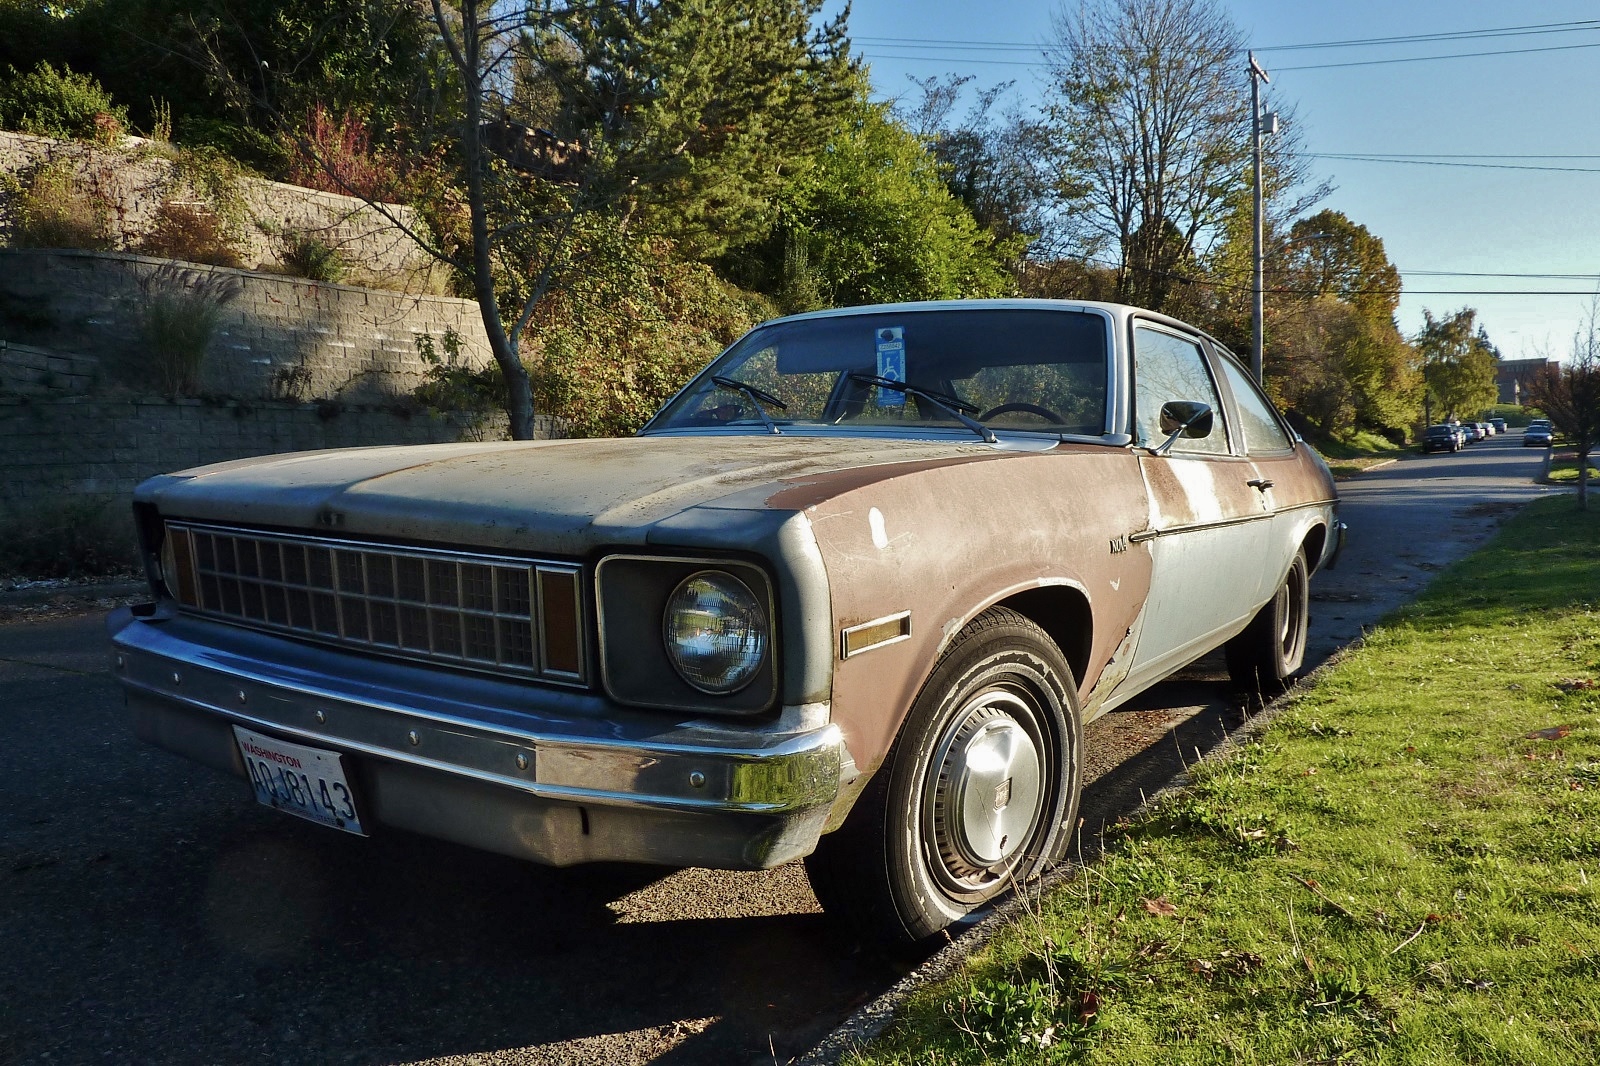 1977 Chevrolet Nova Hatchback.